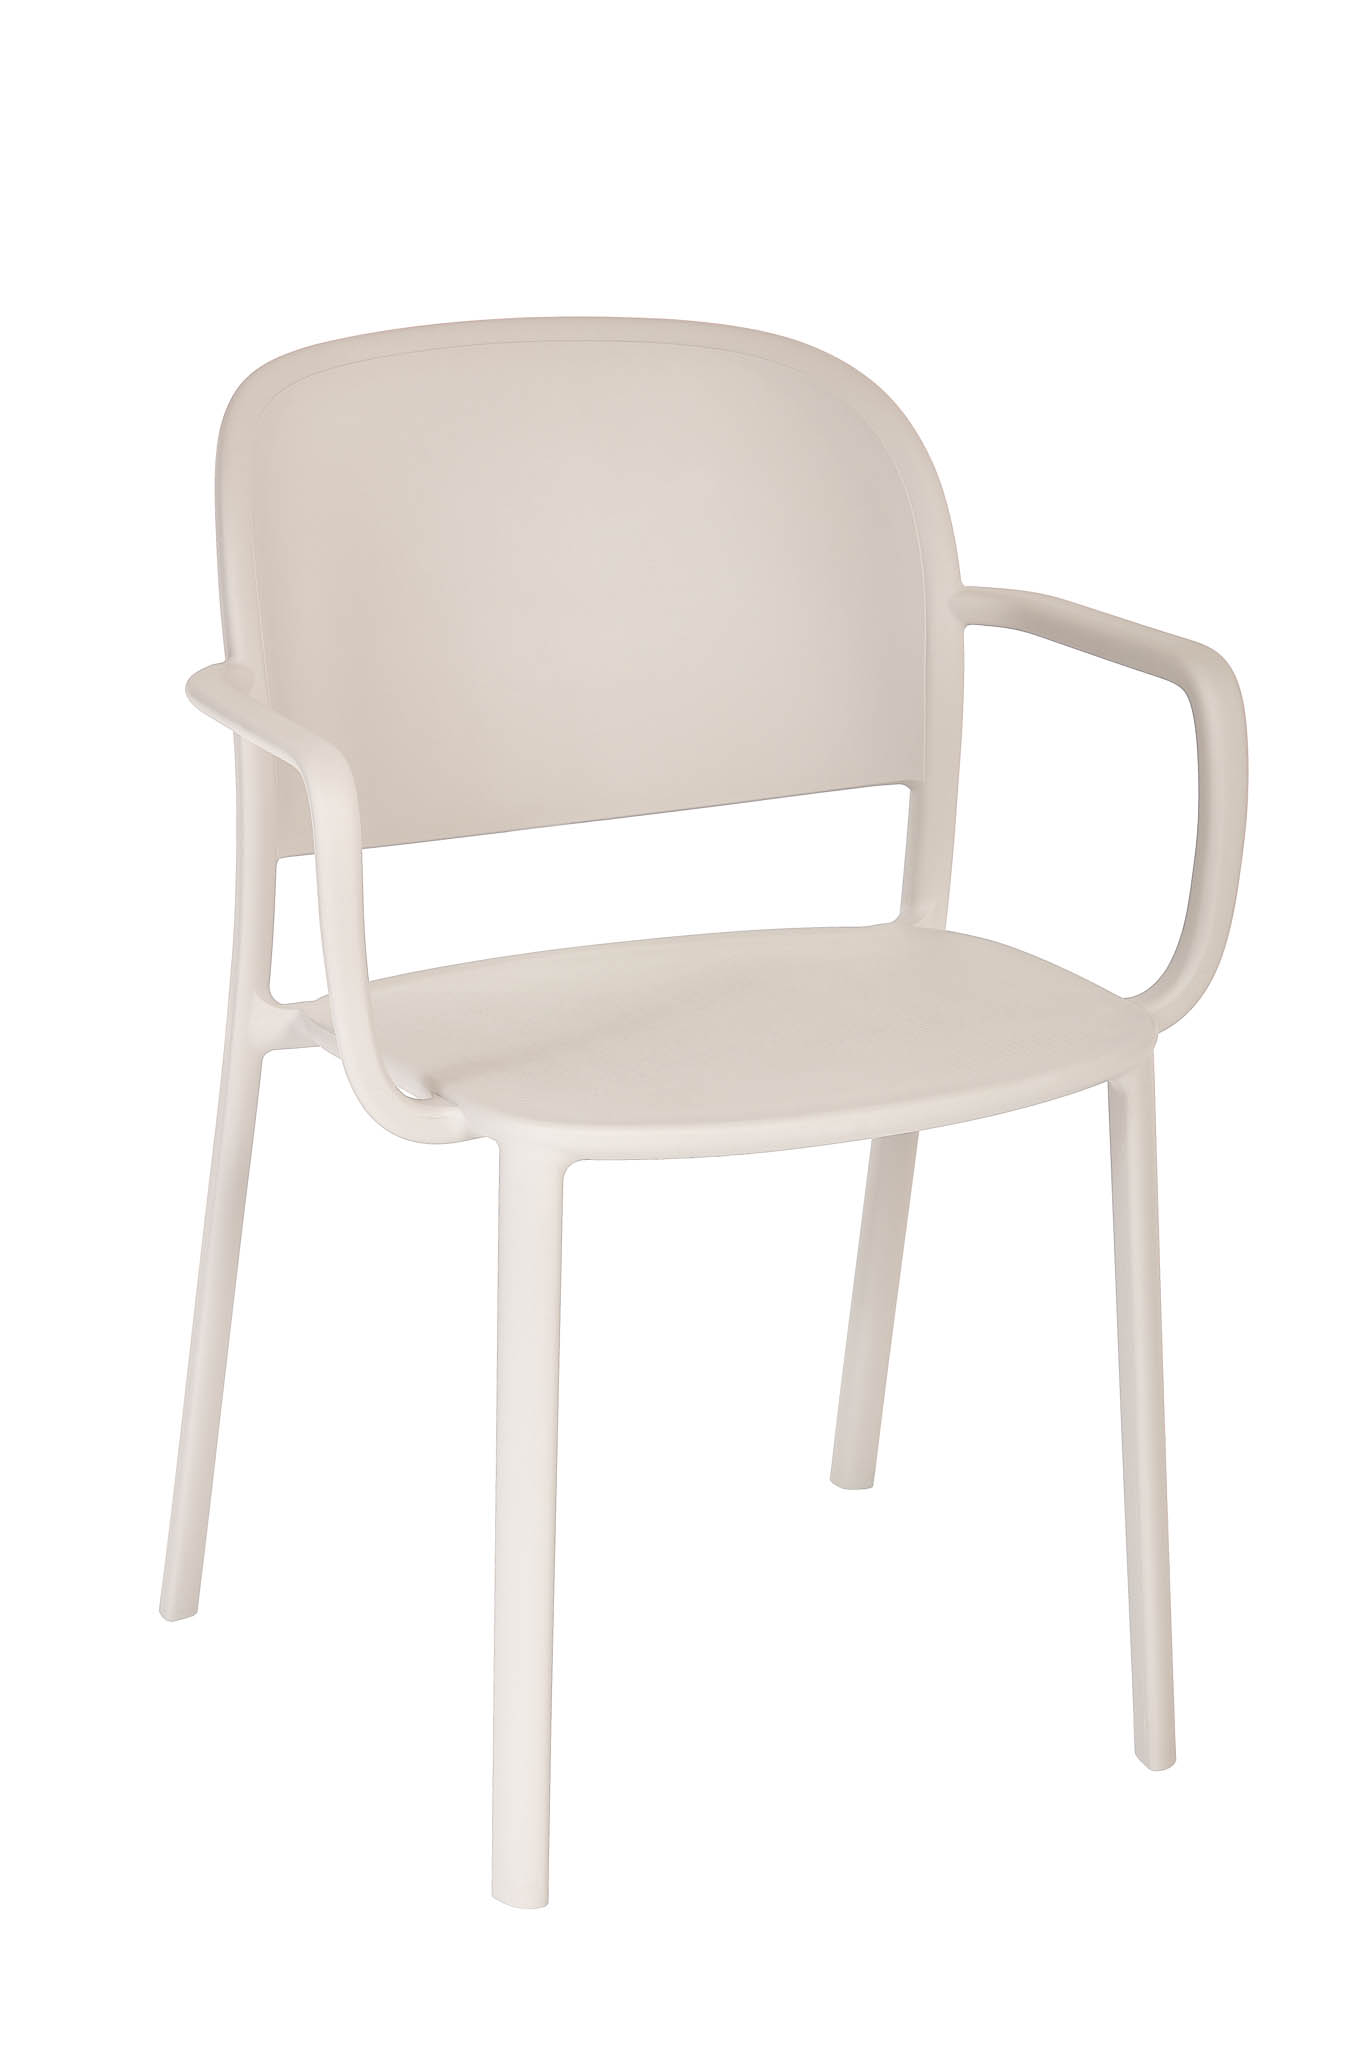 AD hotelska oprema Fotelja 01 - Pearl boje slika proizvoda